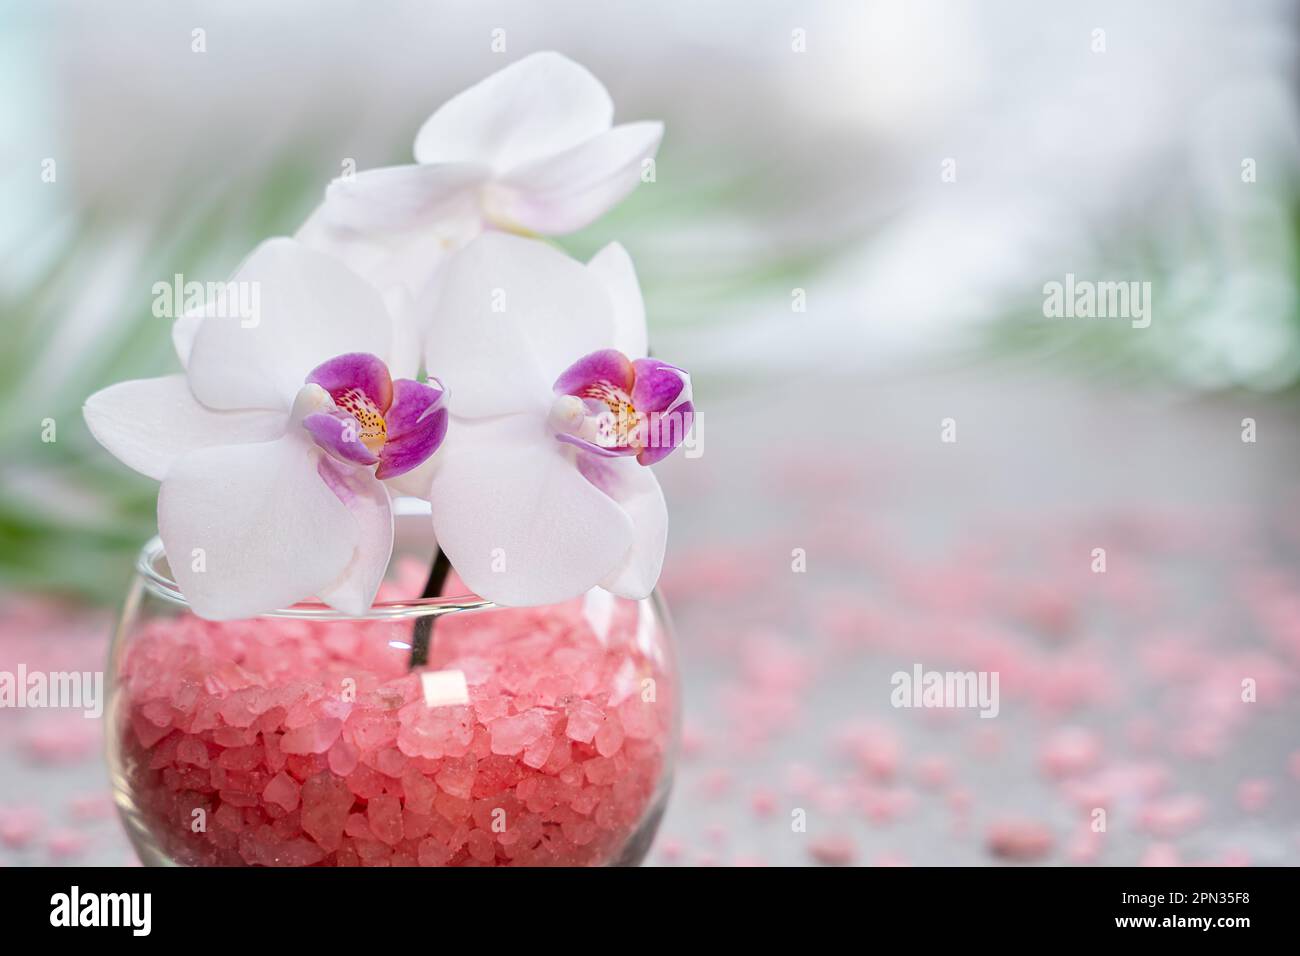 Pinke Orchidee in einer Vase mit pinkfarbenem Meersalz in Nahaufnahme. Spa- und Wellnesskonzept Stockfoto